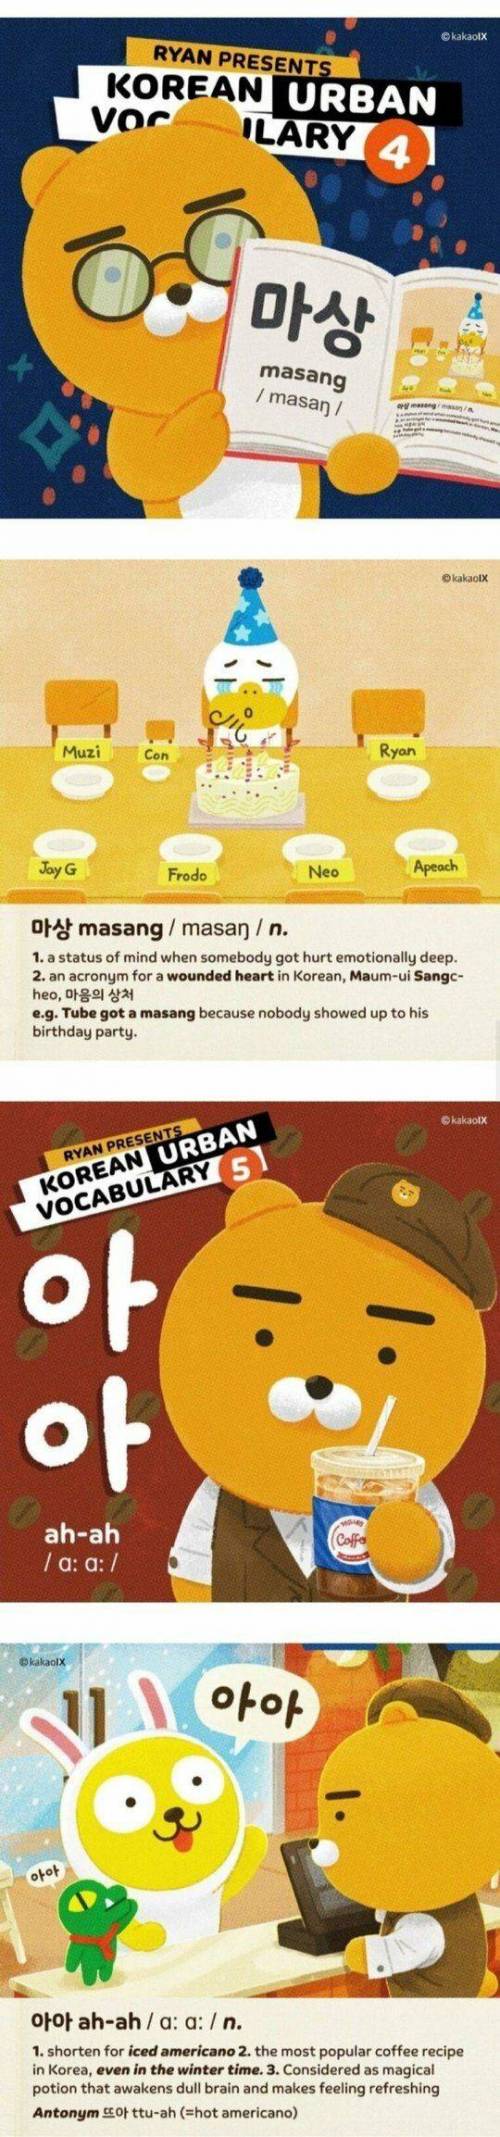 [스압] 카카오 친구들이 영어로 알려주는 한국 유행어